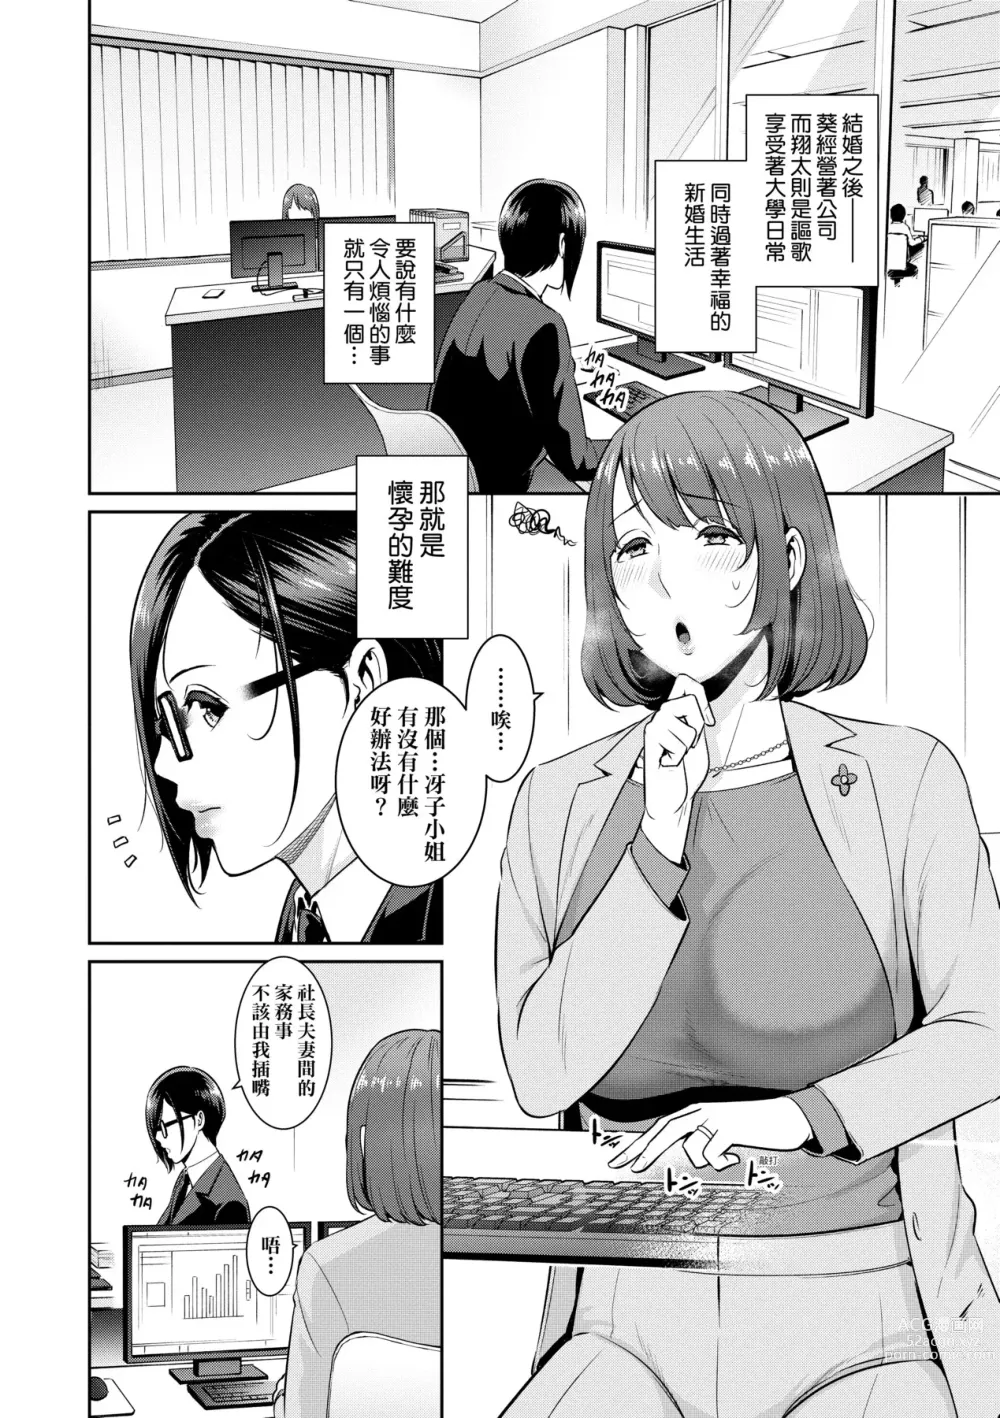 Page 9 of manga 性奮悸動 朋友的馬麻 (decensored)